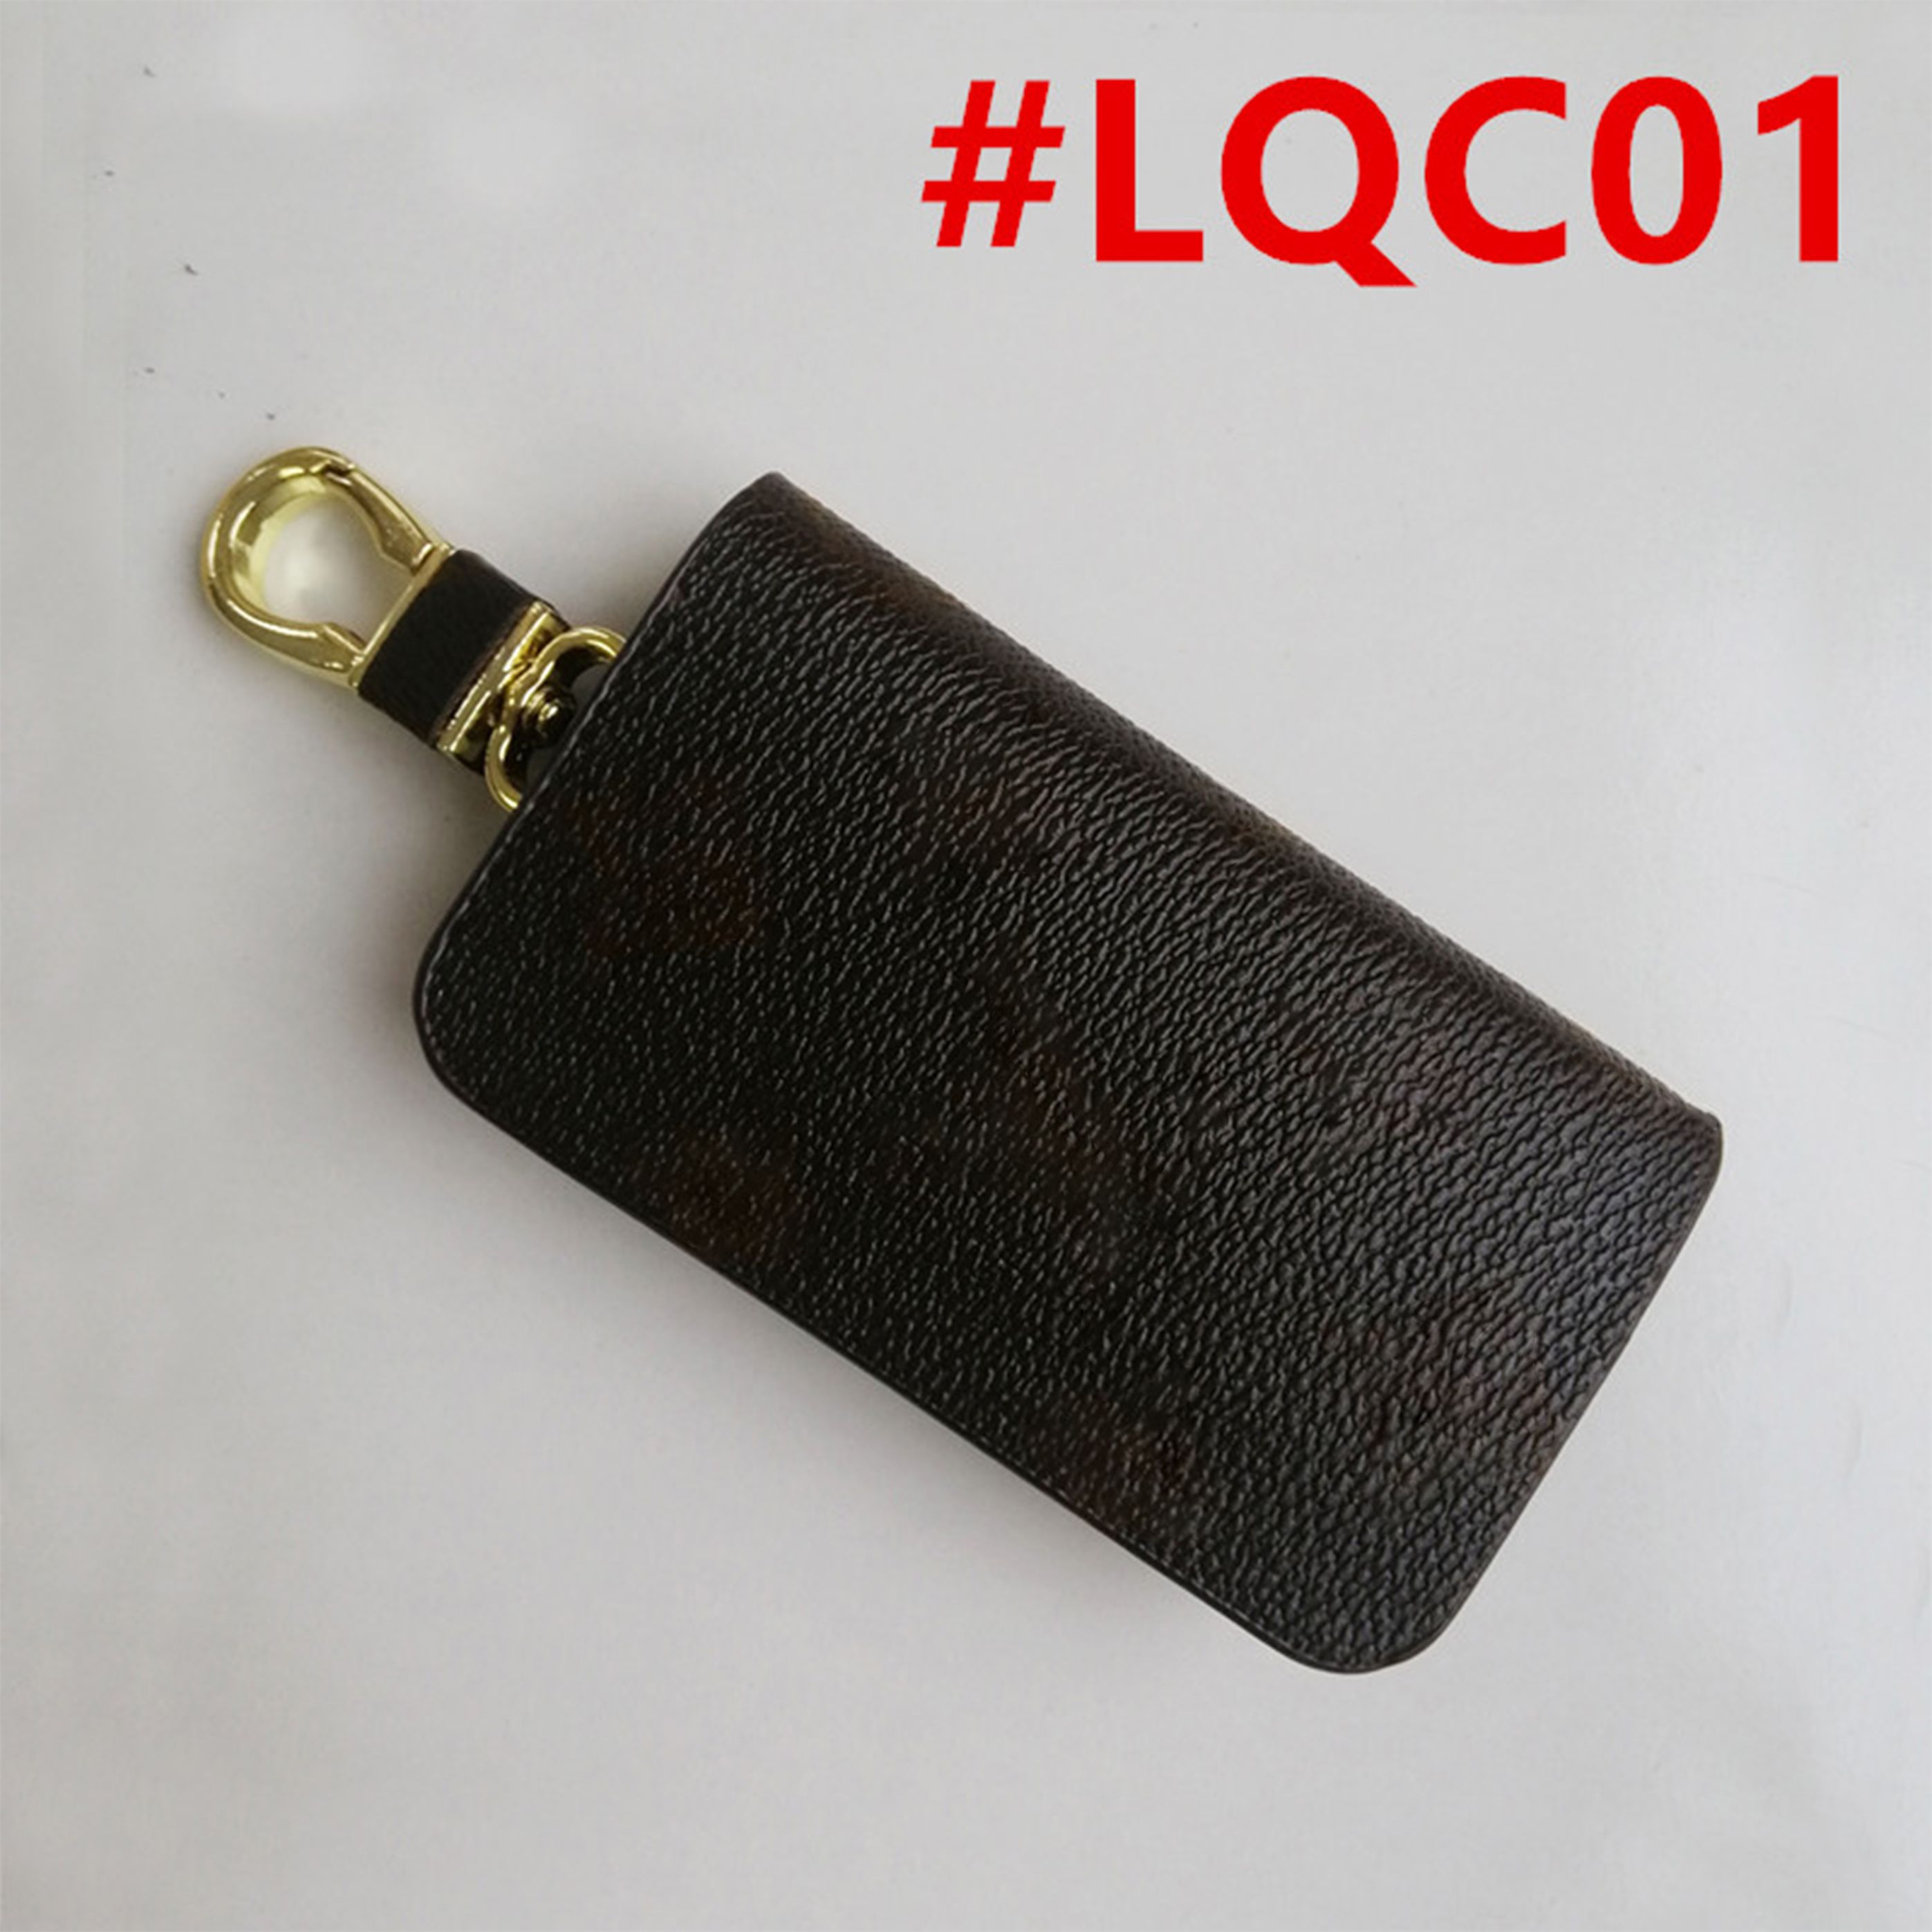 LQC01